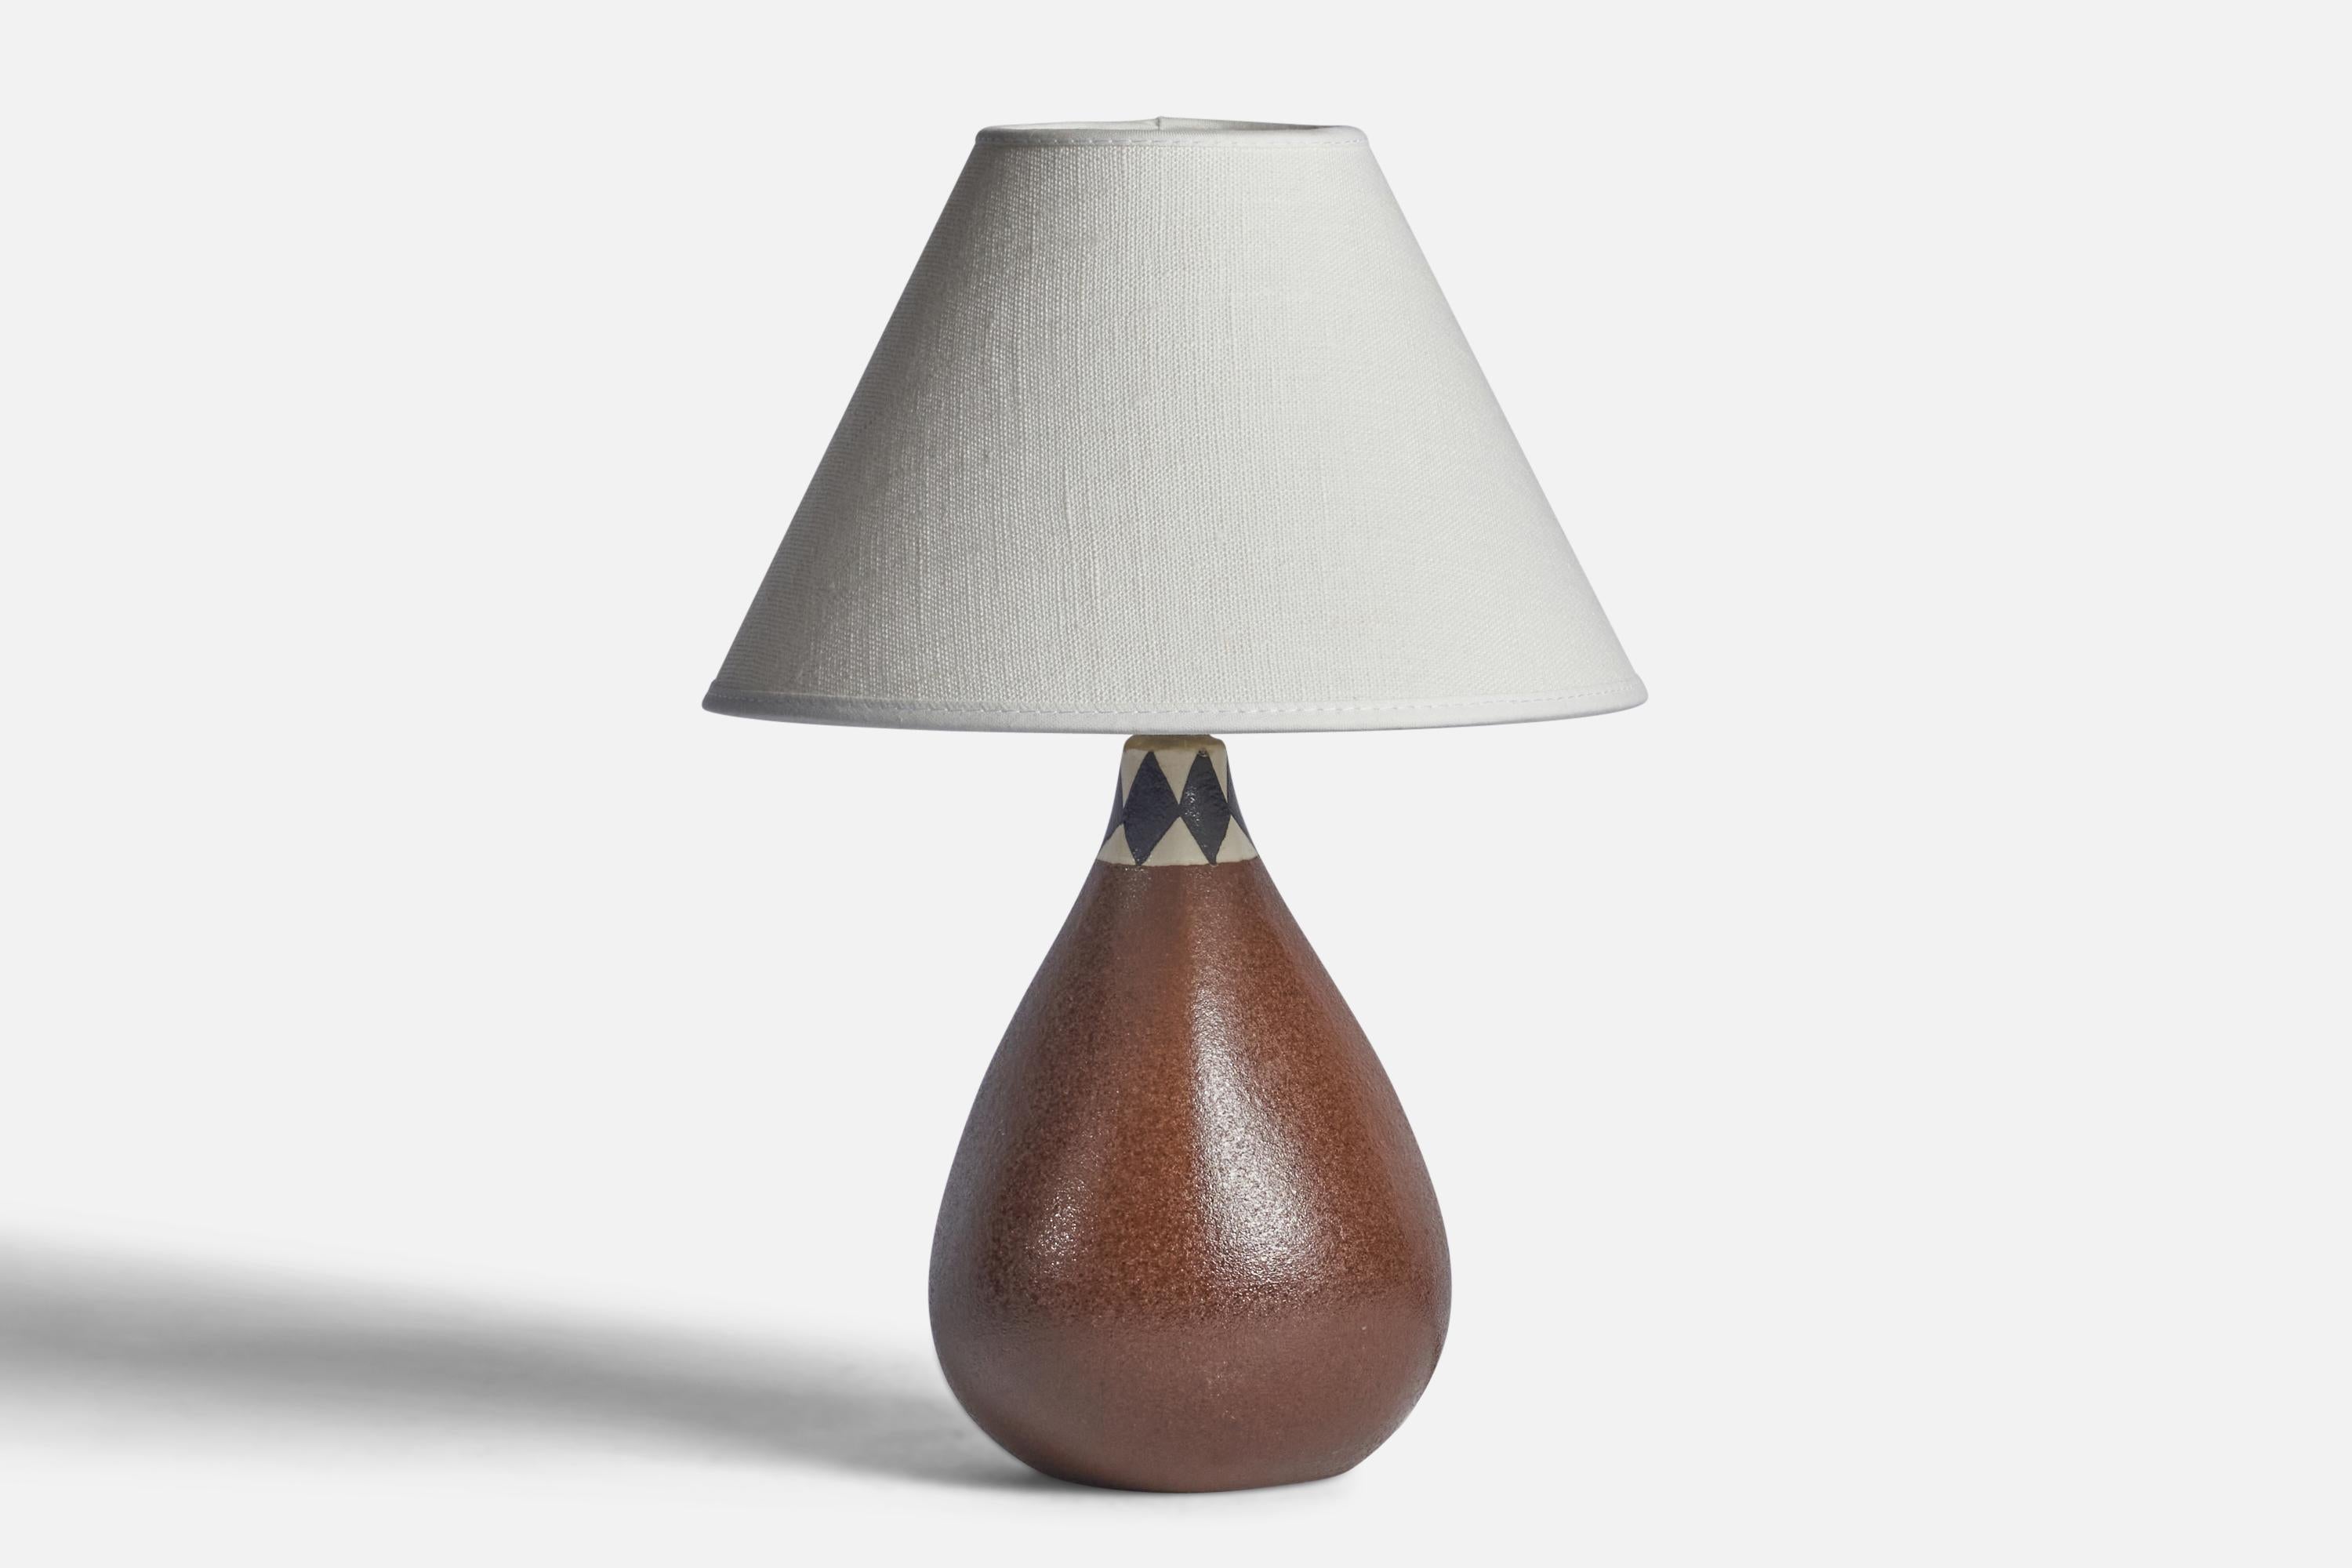 Lampe de table en grès émaillé brun, blanc et noir, conçue et produite en Suède, années 1960.

Dimensions de la lampe (pouces) : 8.75